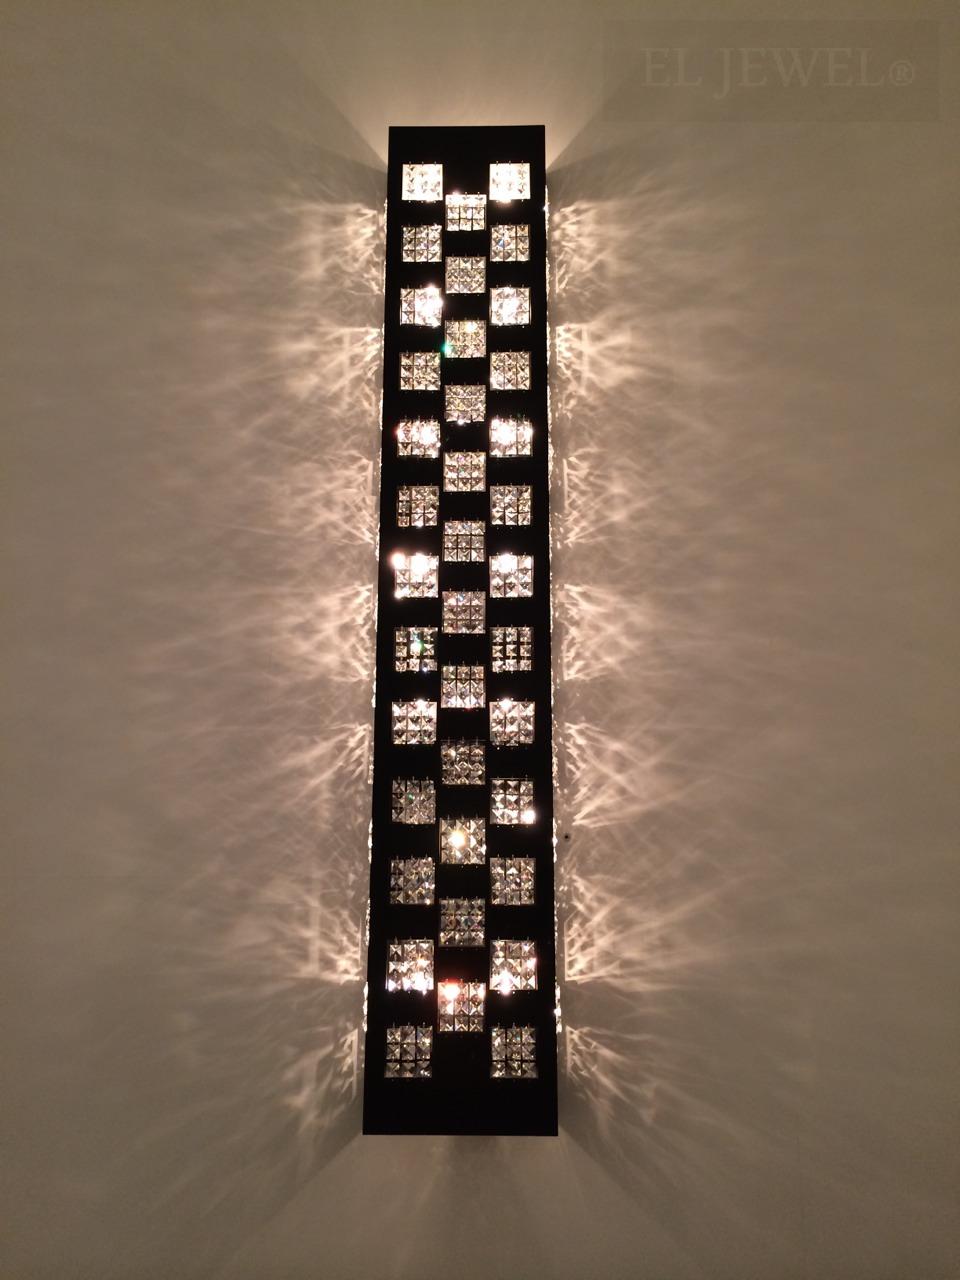 インテリア照明の納品実績 | モダンおしゃれな大型照明をオーダーメイドで製作できます。｜群馬県のエスポワール結婚式場